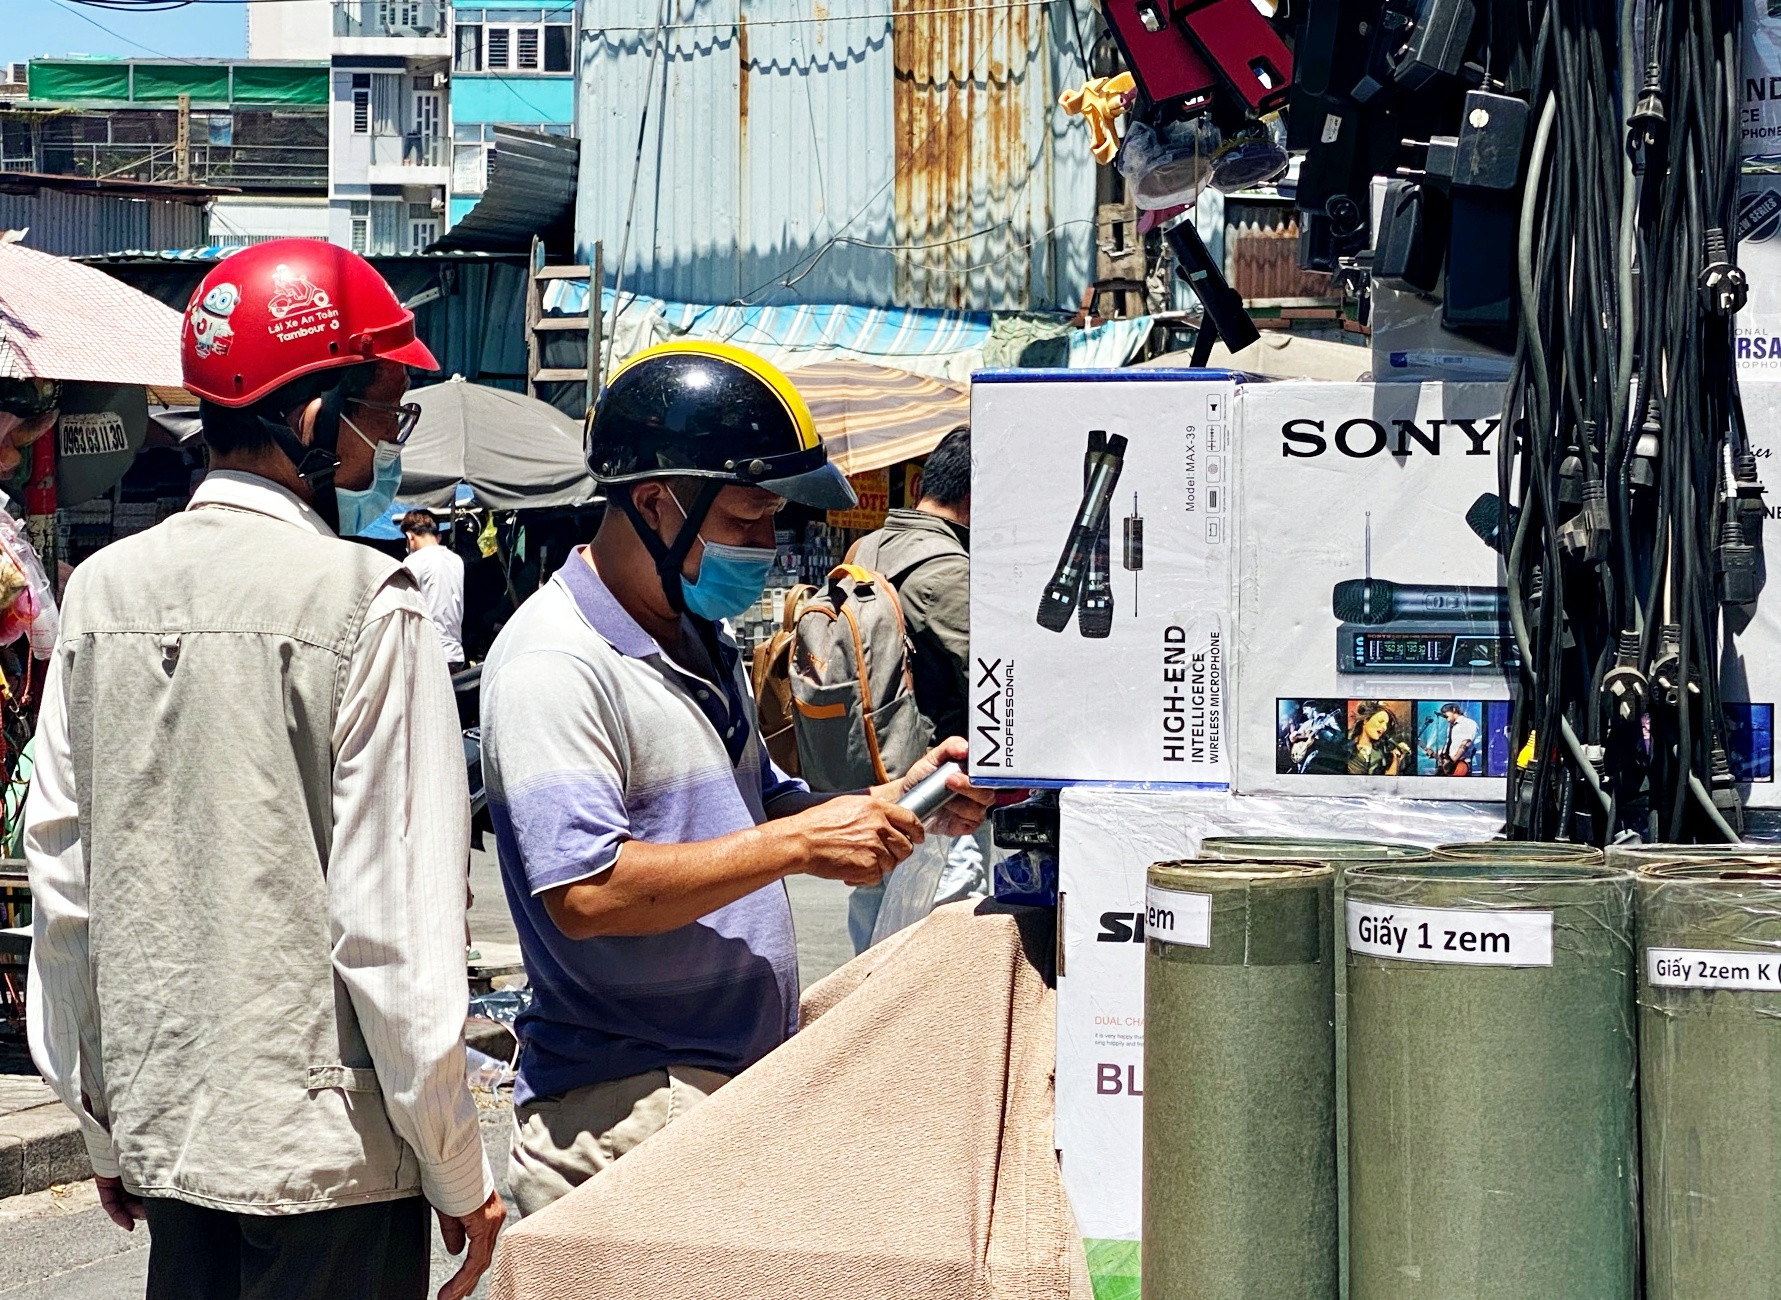 TP.HCM xử lý tiếng ồn karaoke tự phát: Người bán loa kéo đứng ngồi không yên - 1